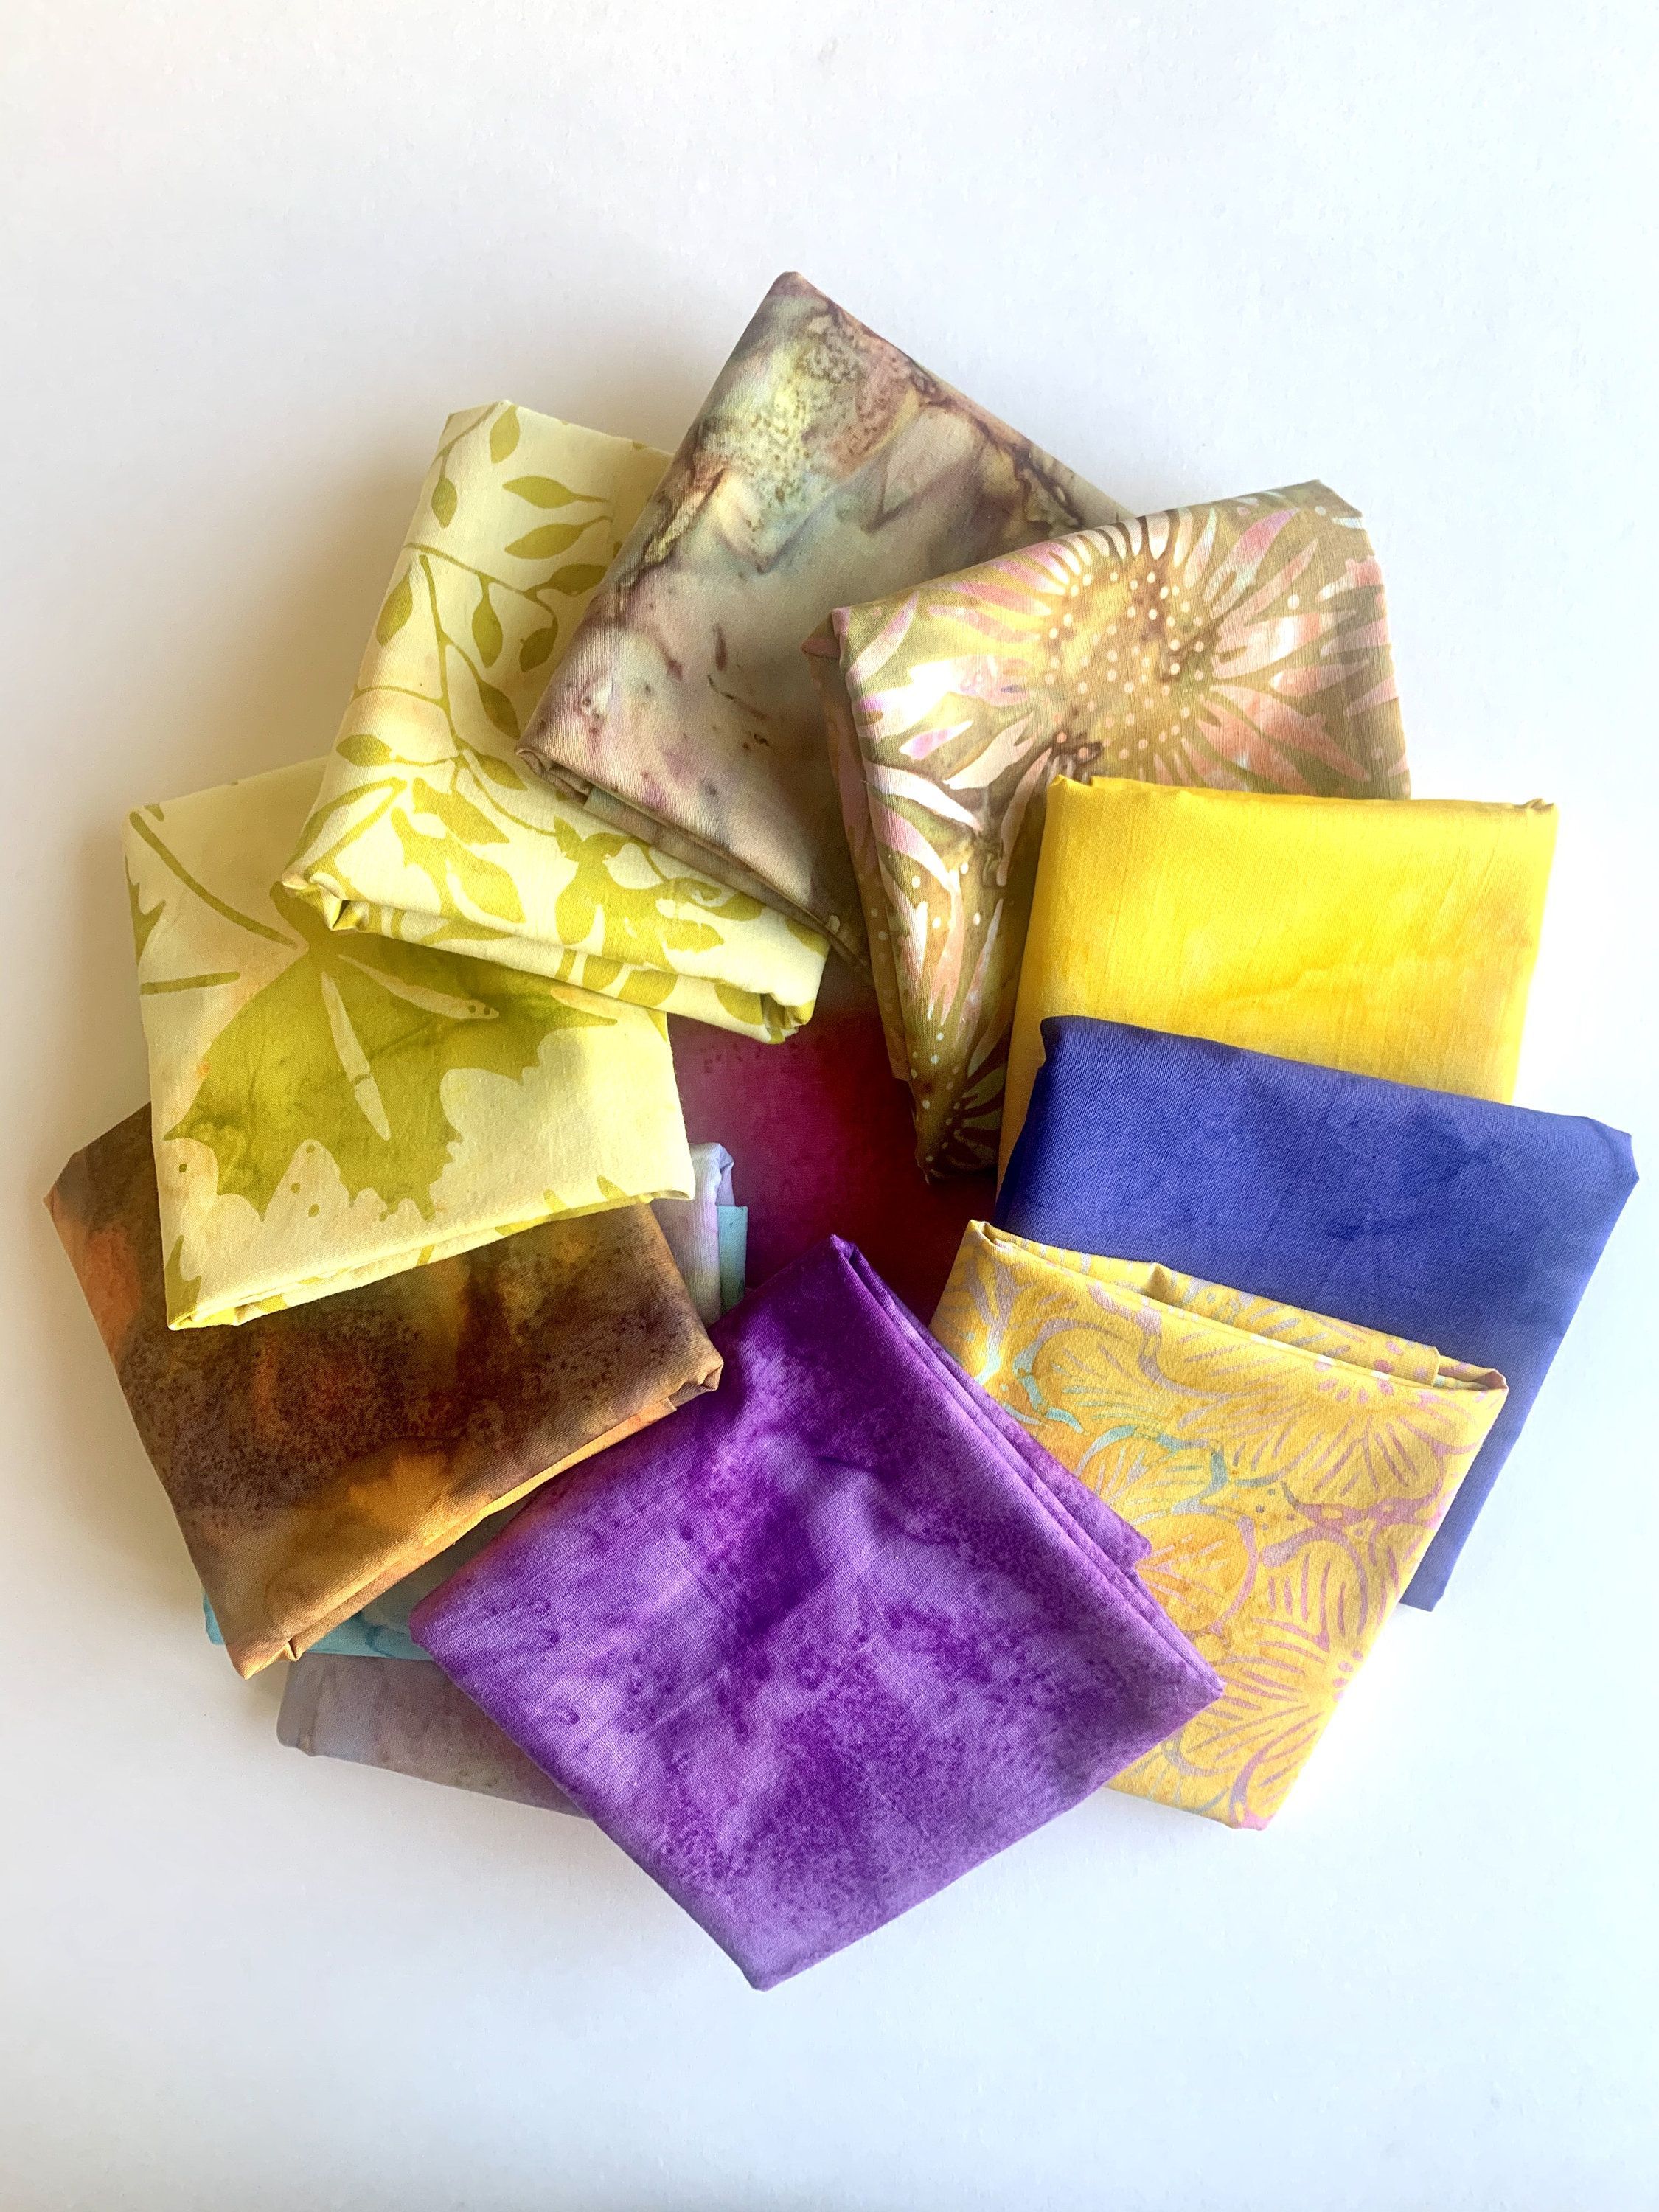 Batik Fat Quarter Quilt Fabric Bundle/Mask Making/DIY Craft | Etsy -   19 fabric crafts no sew fat quarters ideas